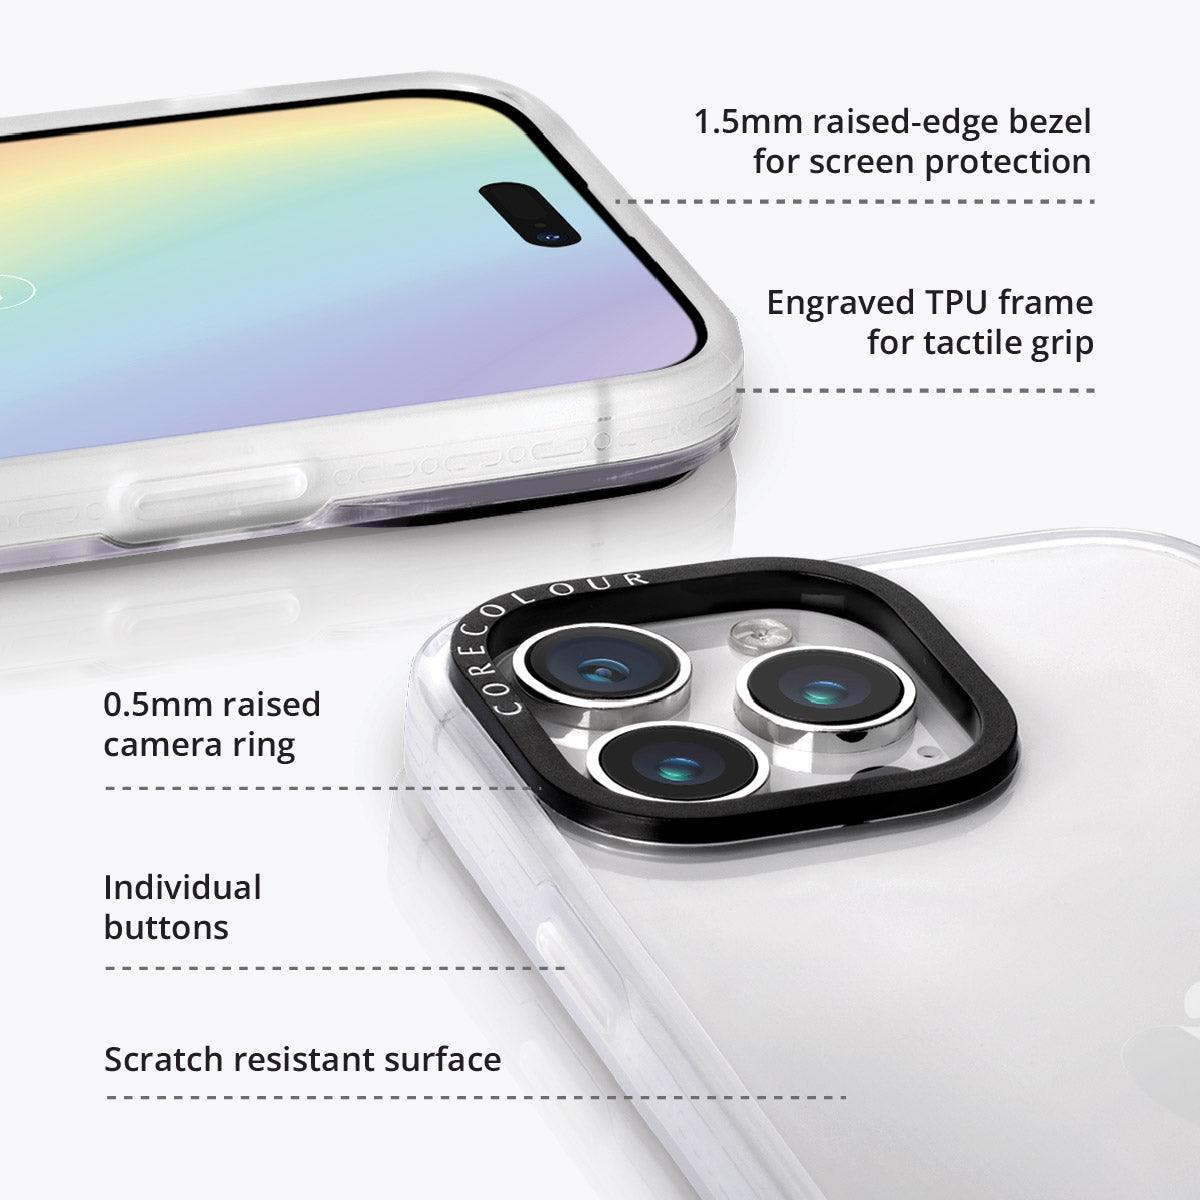 iPhone 14 Pro Max Lilac Picnic Phone Case - CORECOLOUR AU